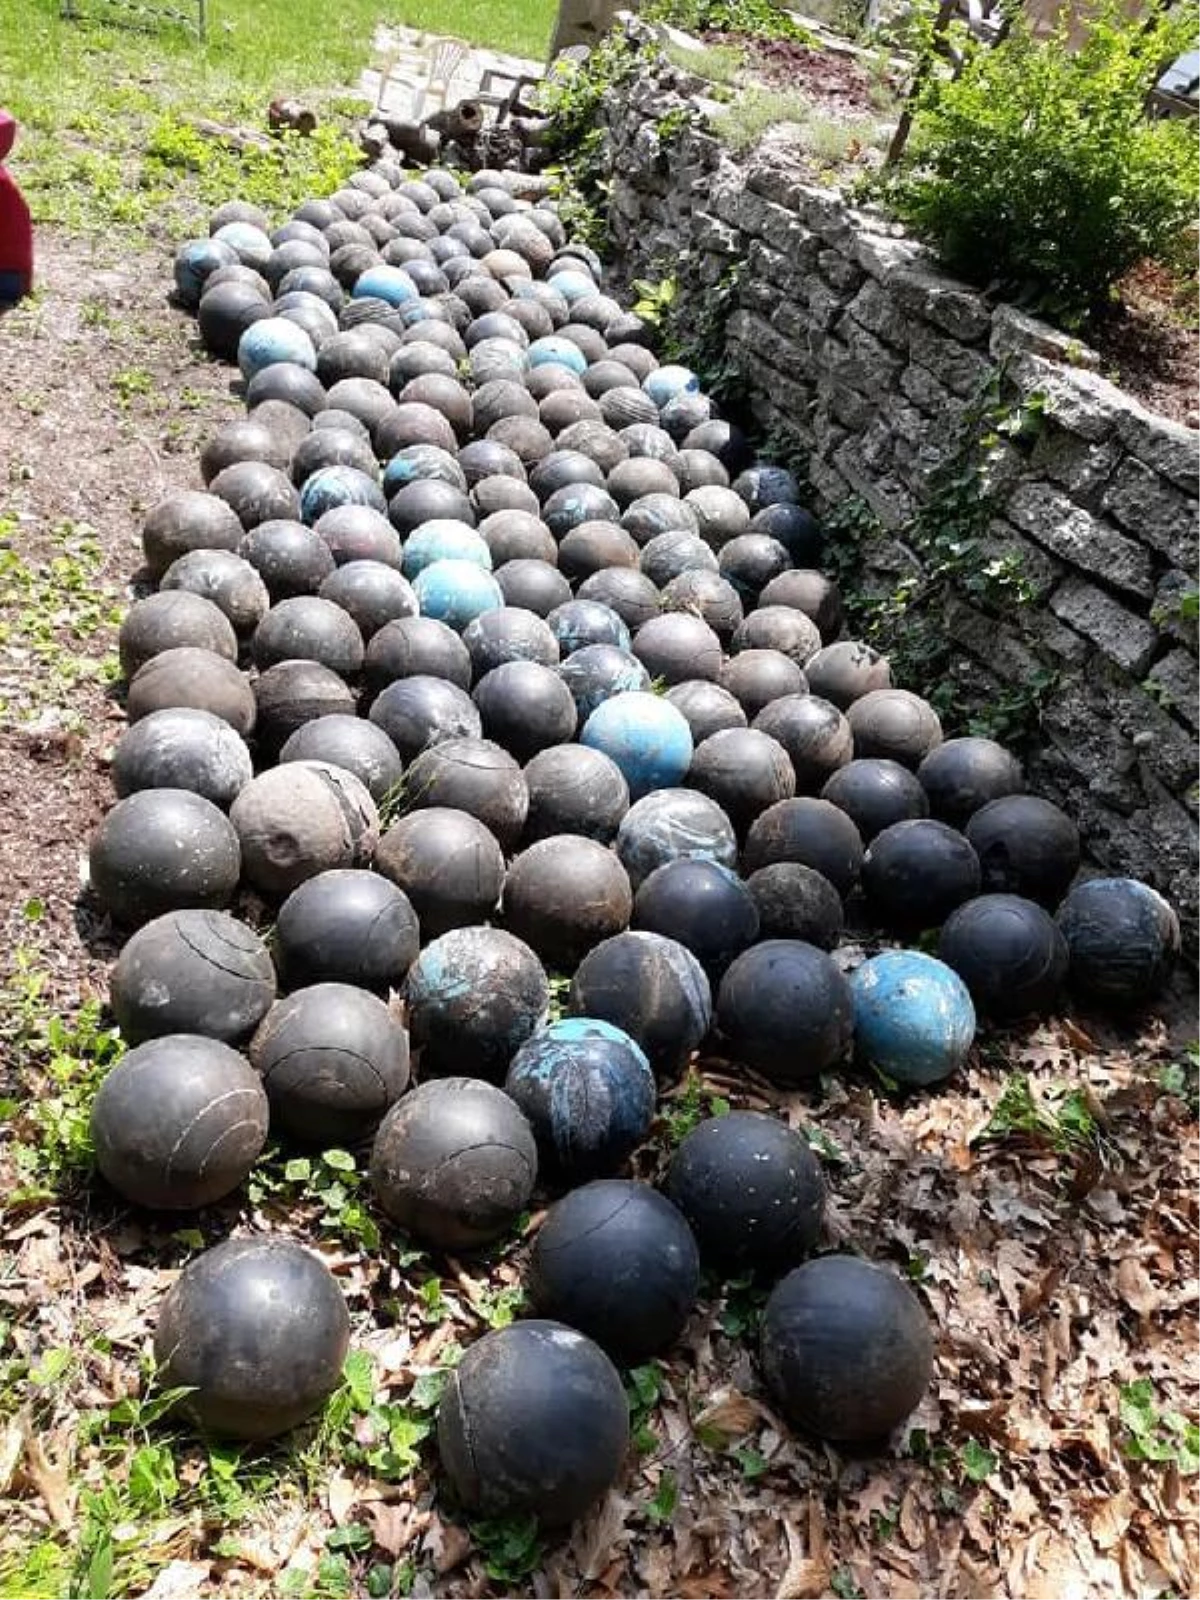 Evinin merdivenlerini yenilemek isteyen adam, kazdığı toprakta gömülü 160 adet bowling topu buldu